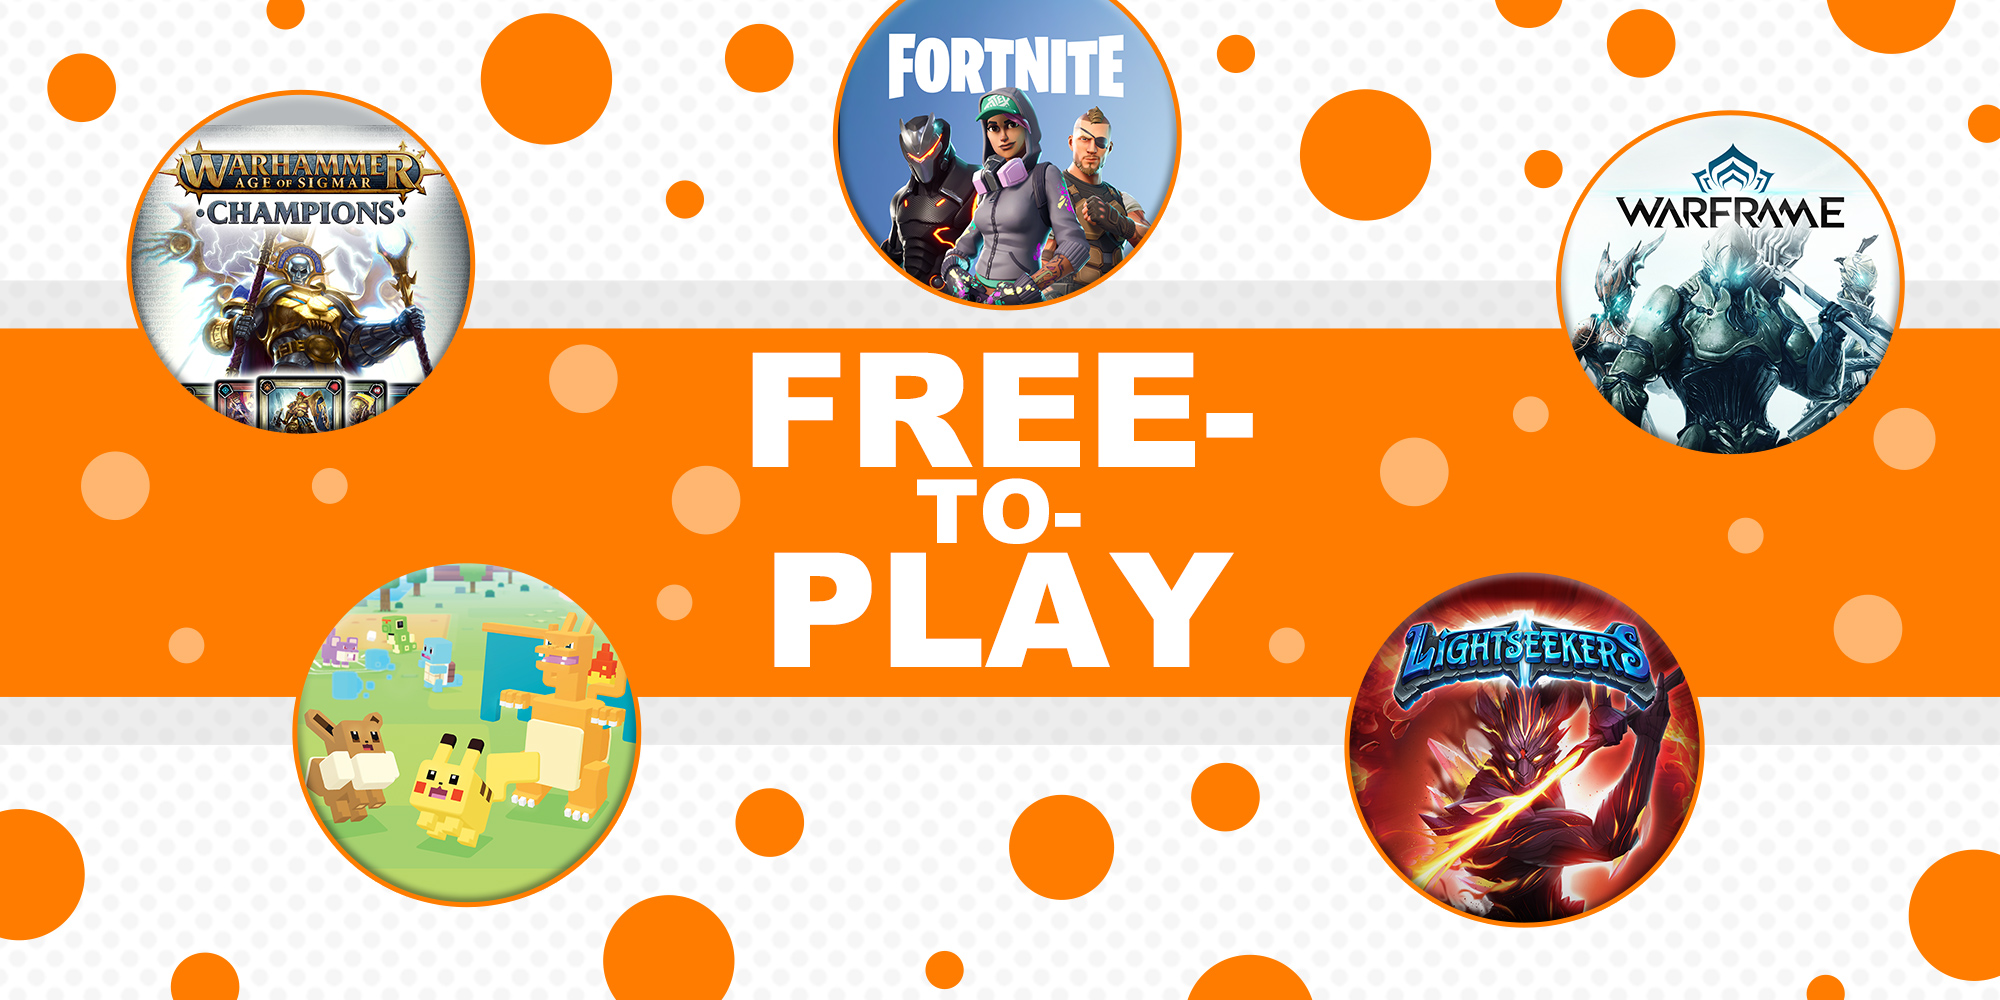 Spiele kostenlos mit dieser Auswahl von Free-To-Play-Spielen!